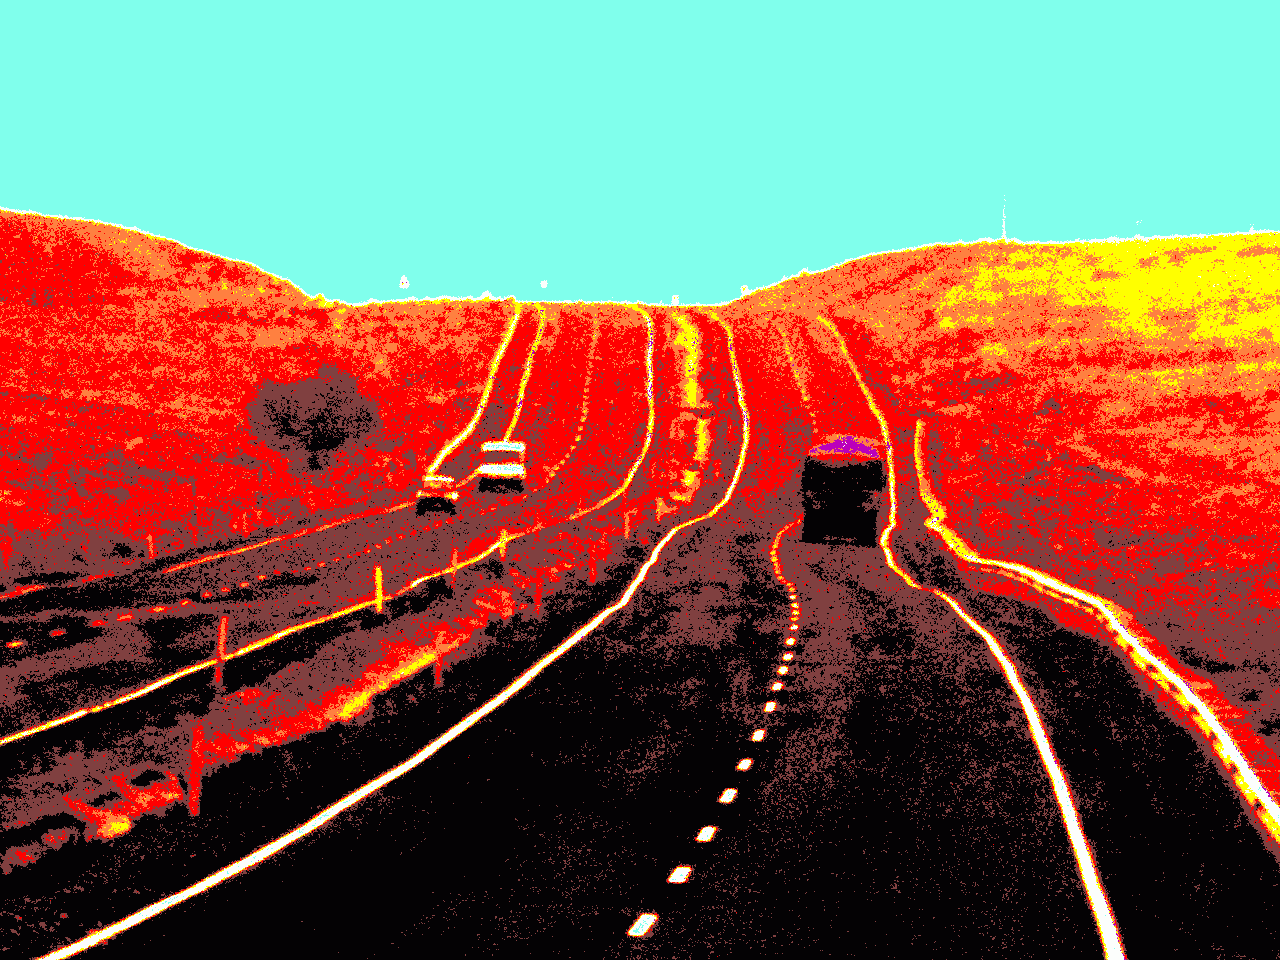 "Highway D300" ©2008 Josi Bennöhr